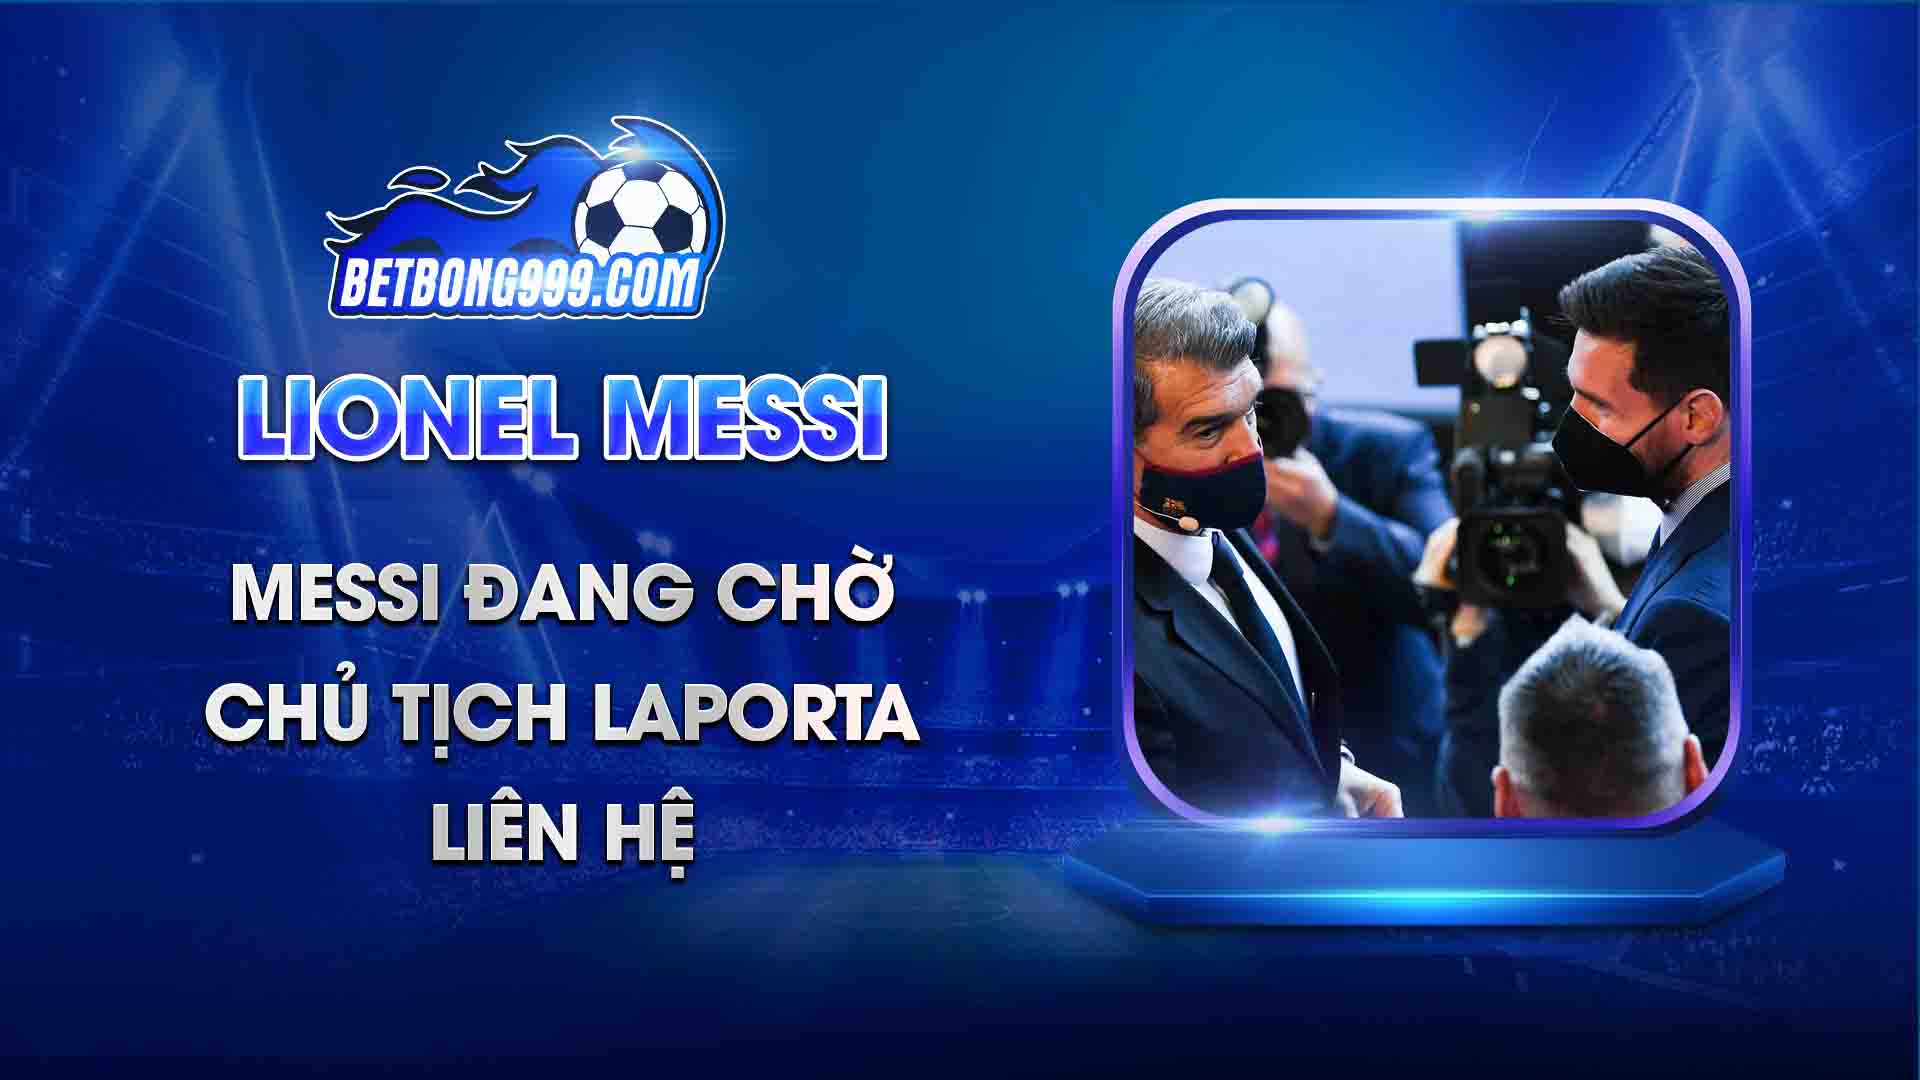 Messi đang chờ chủ tịch Laporta liên hệ